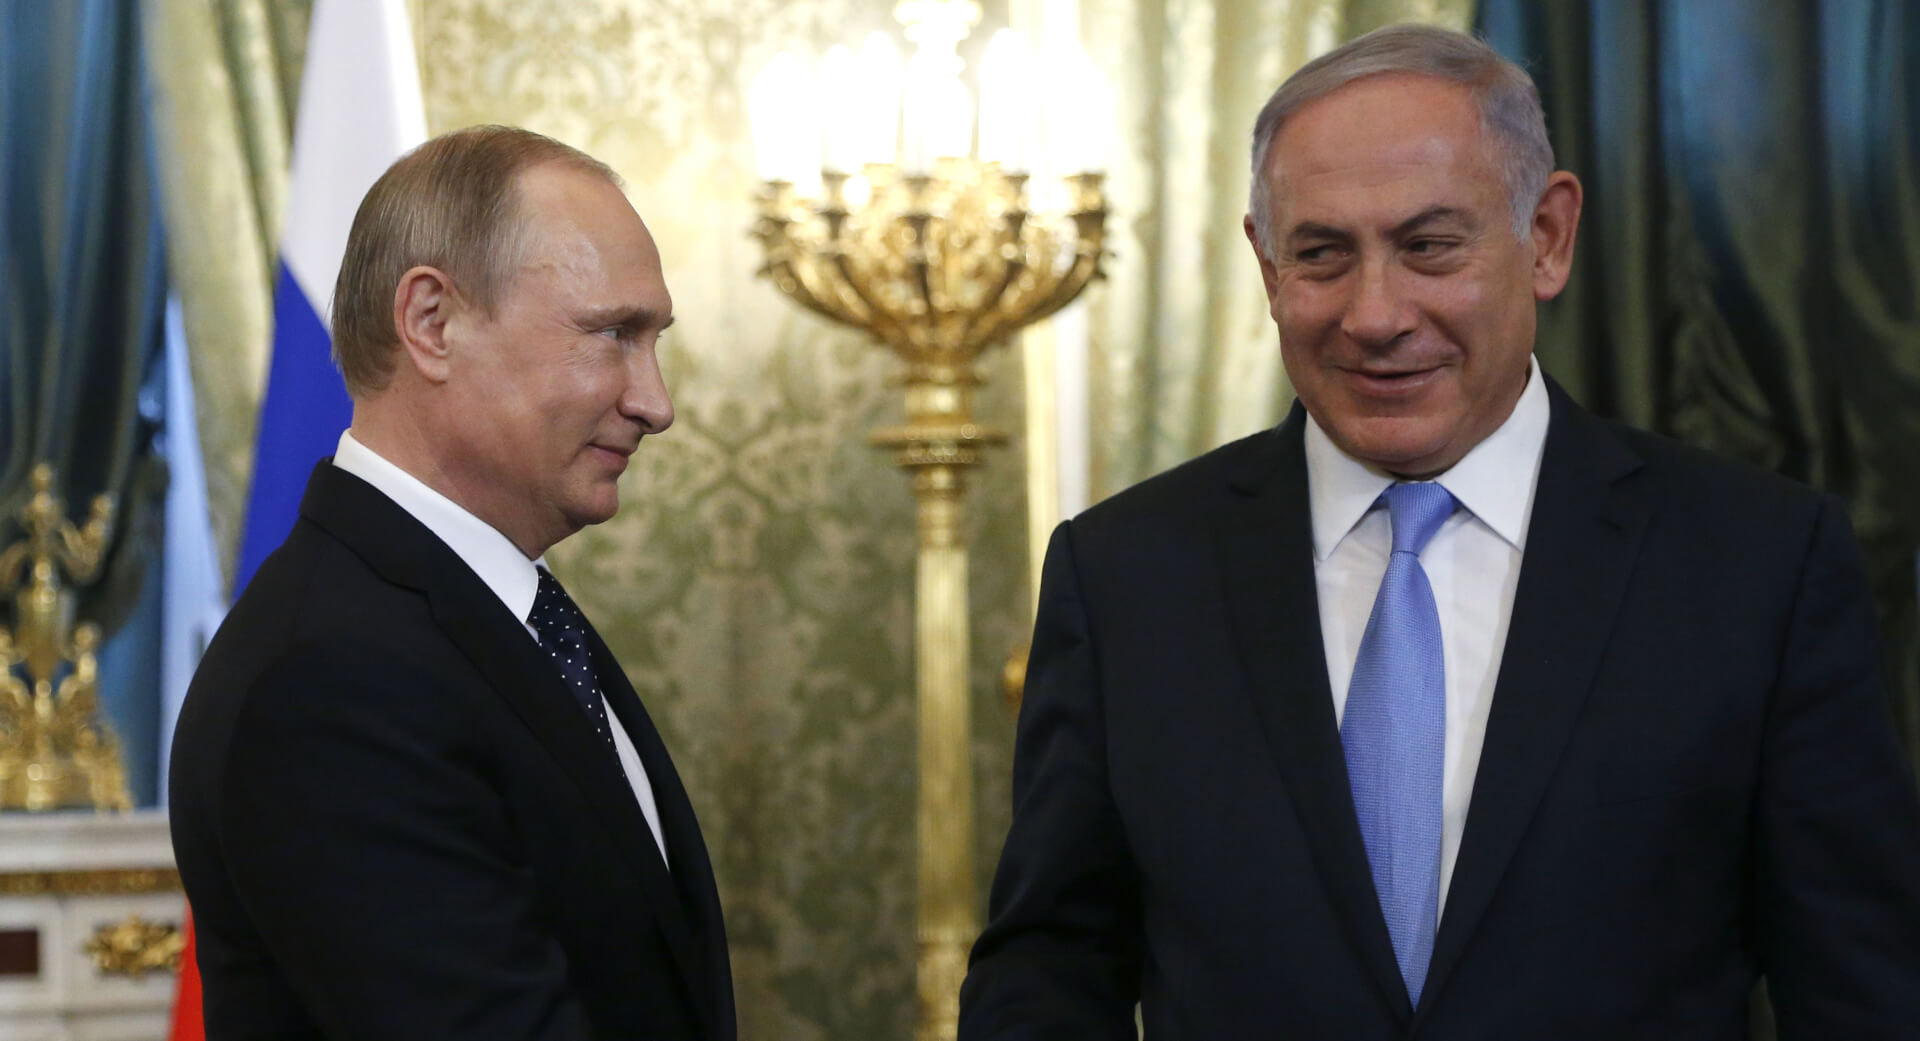 Russia’s Cooperation with Iran “Dangerous”: Israeli PM Netanyahu Tells Putin